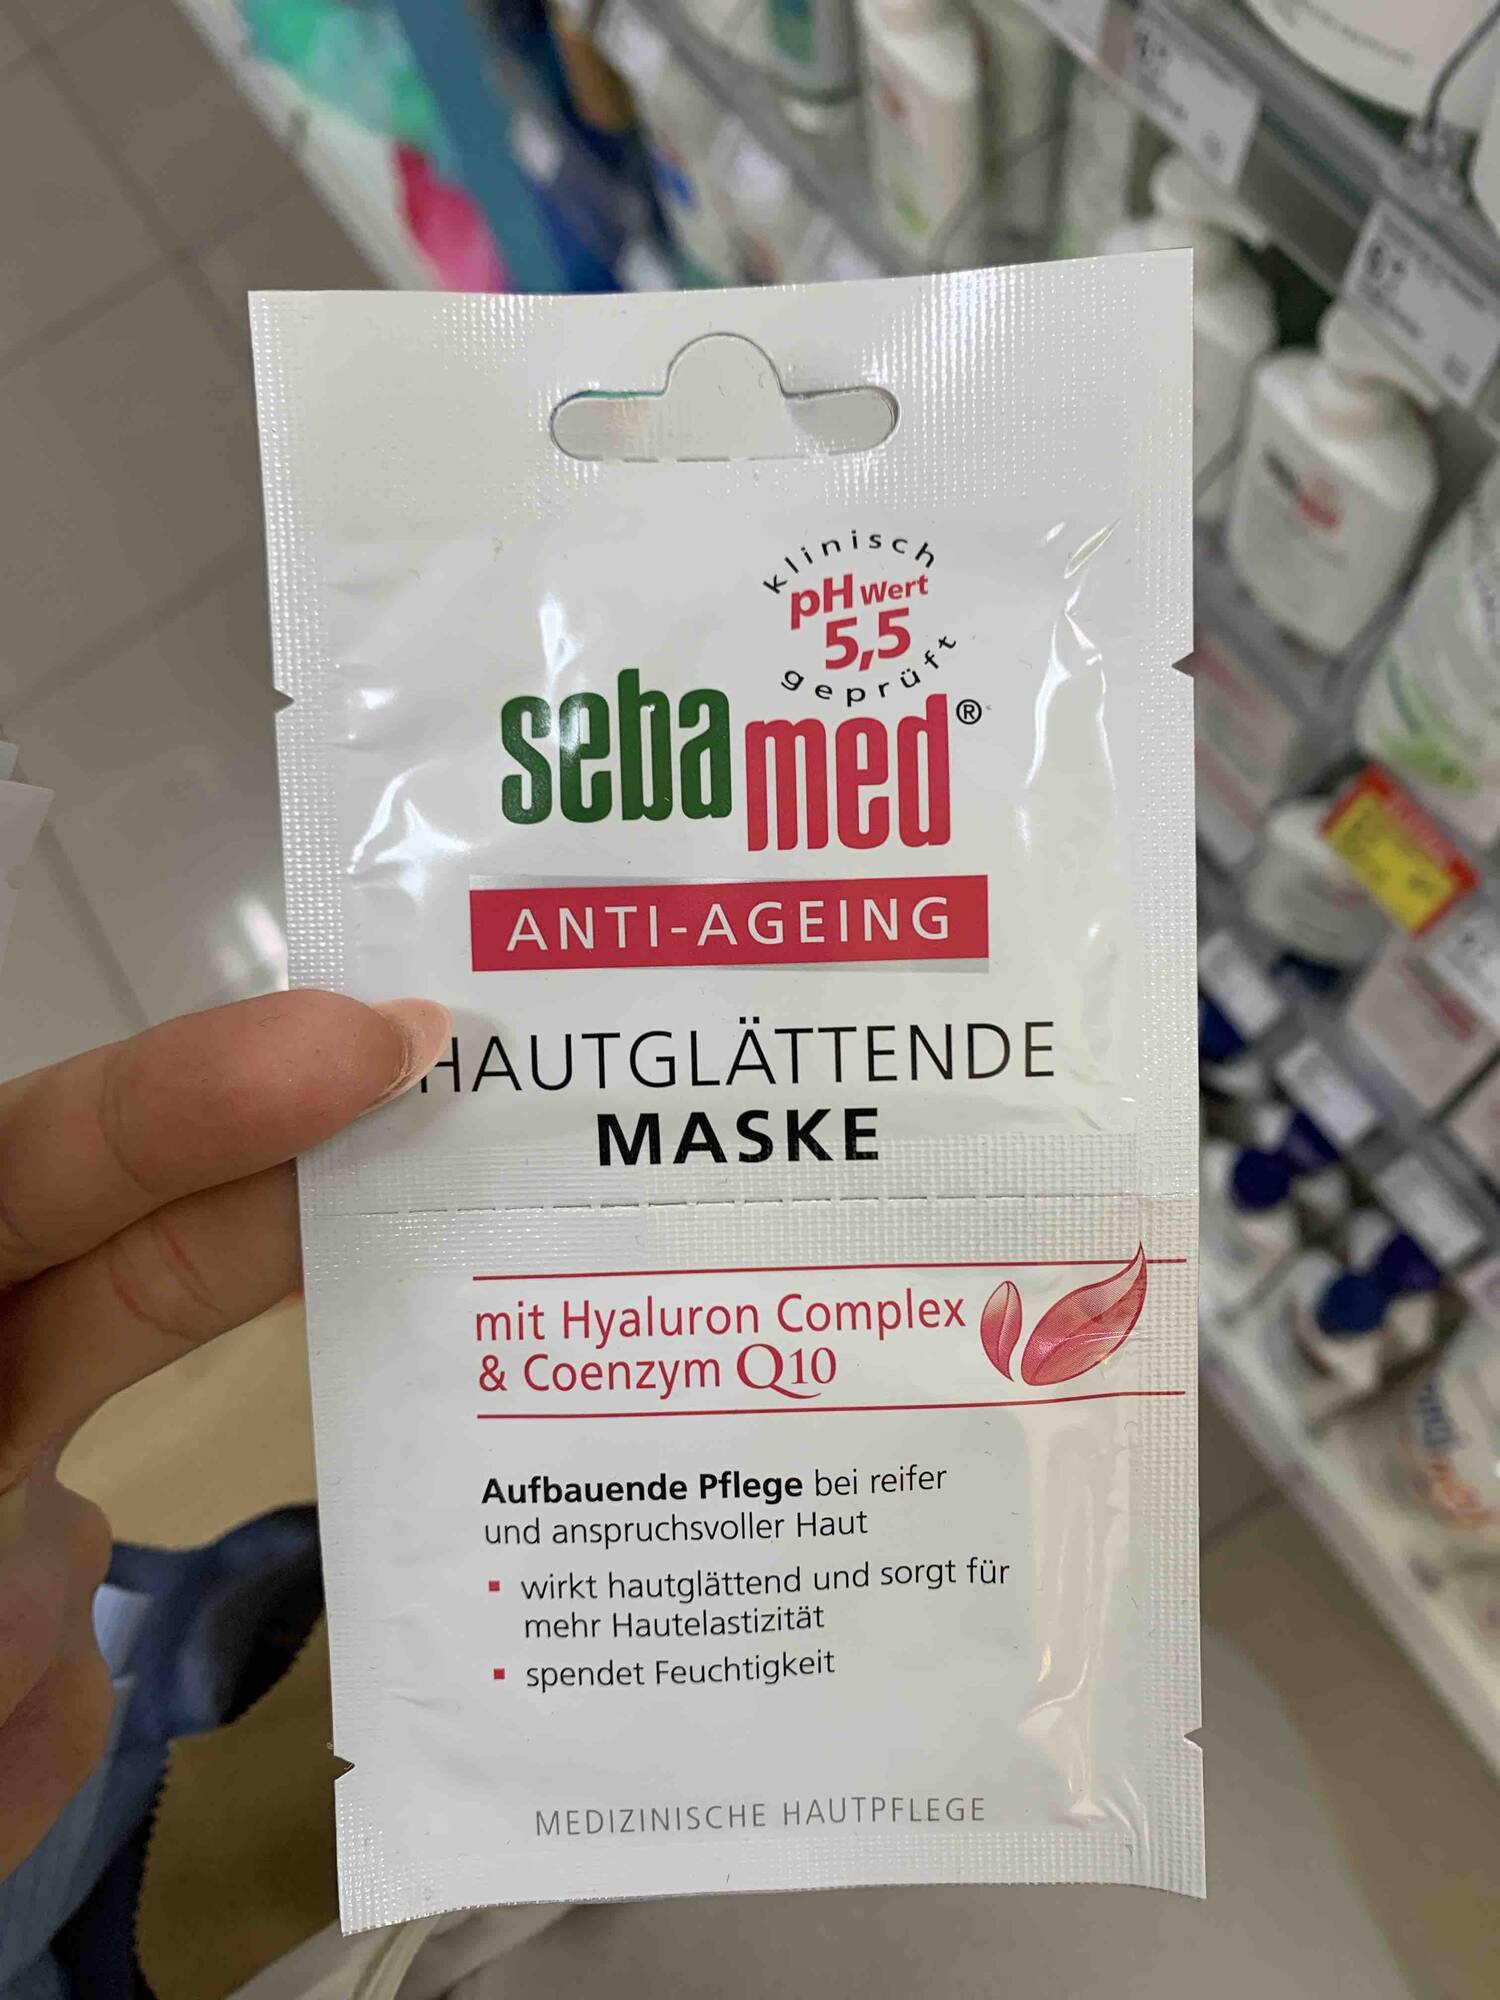 SEBAMED - Anti-ageing - Hautglättende maske